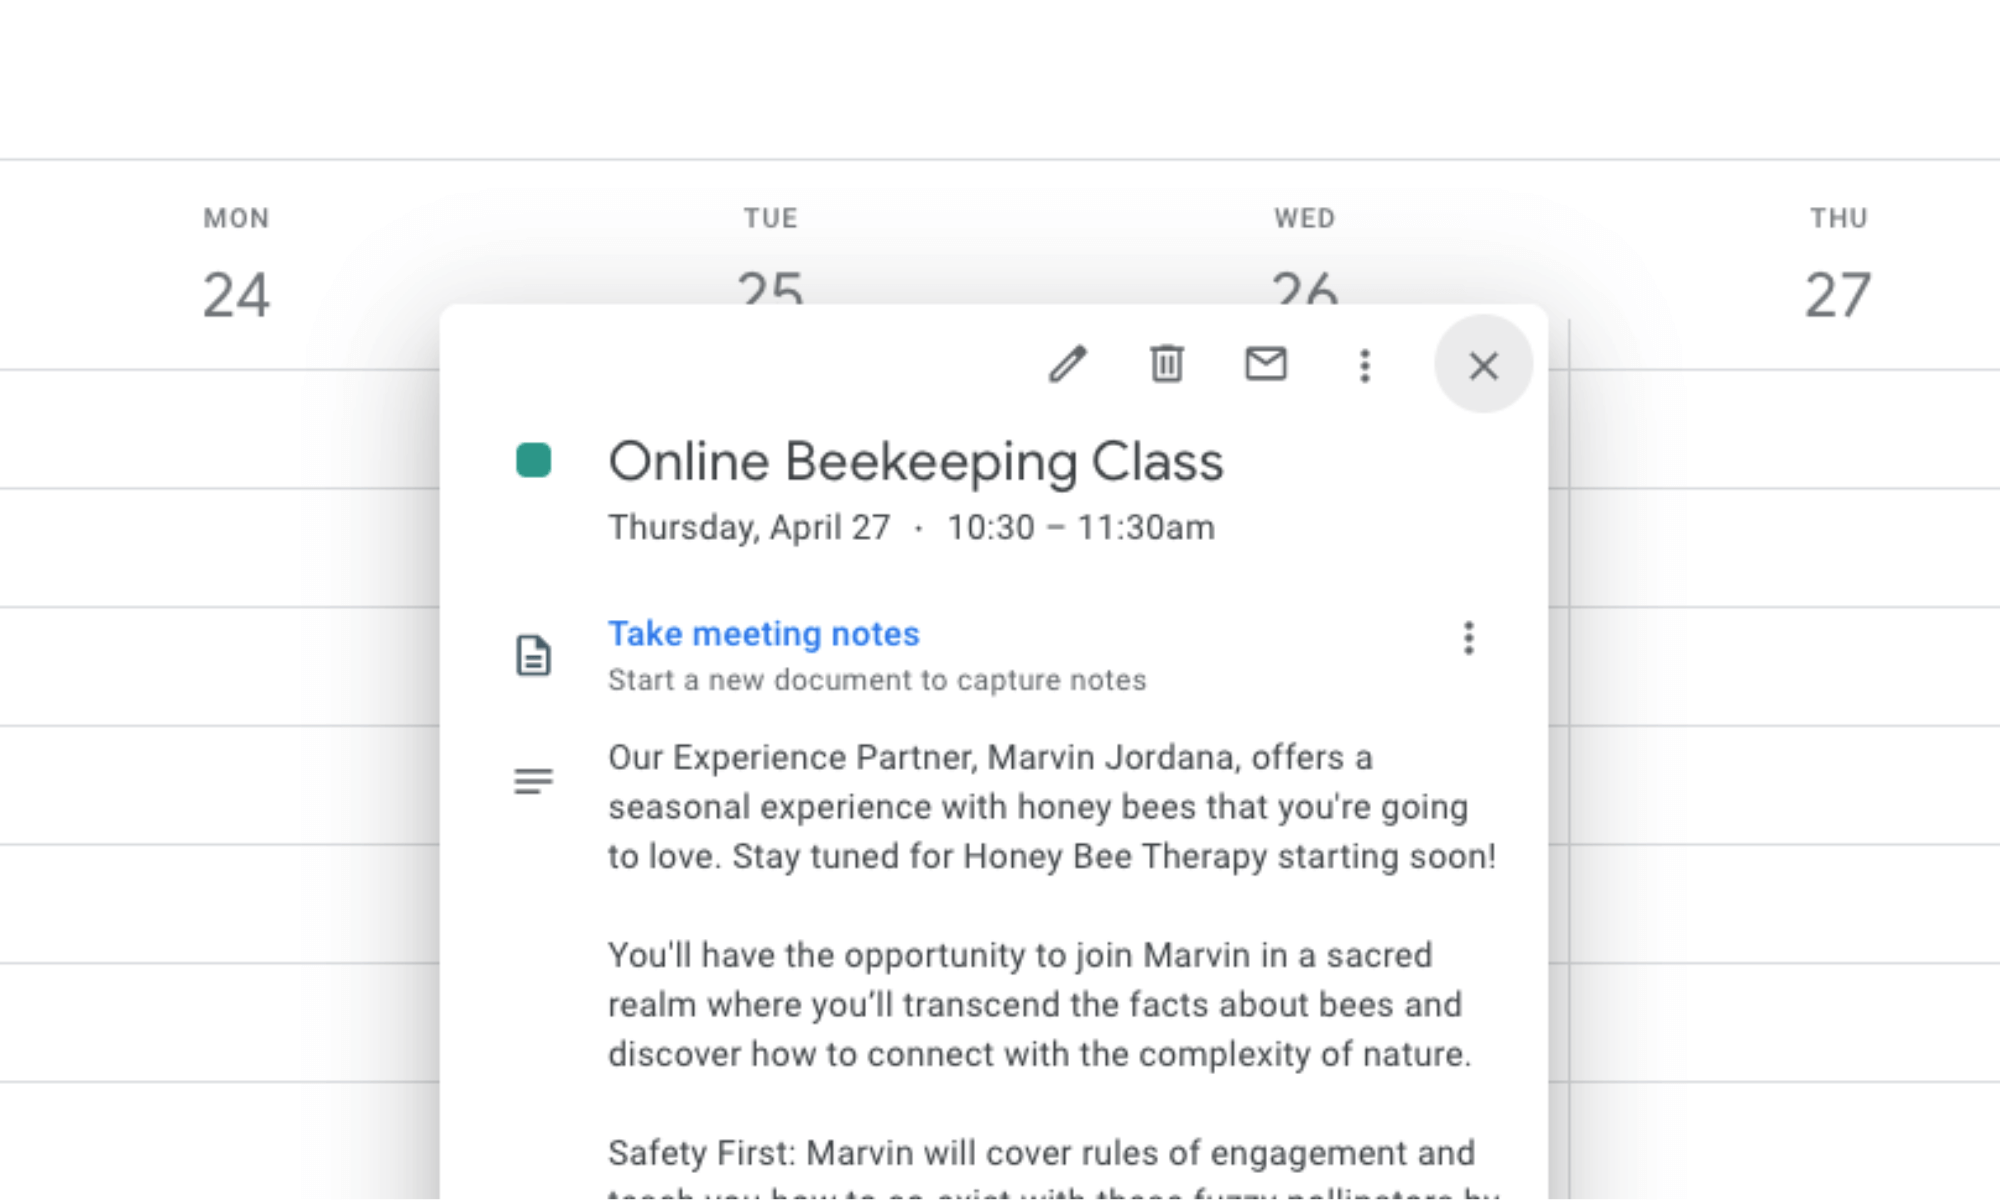 Google calendar integration showcasing an Online Beekeeping Class